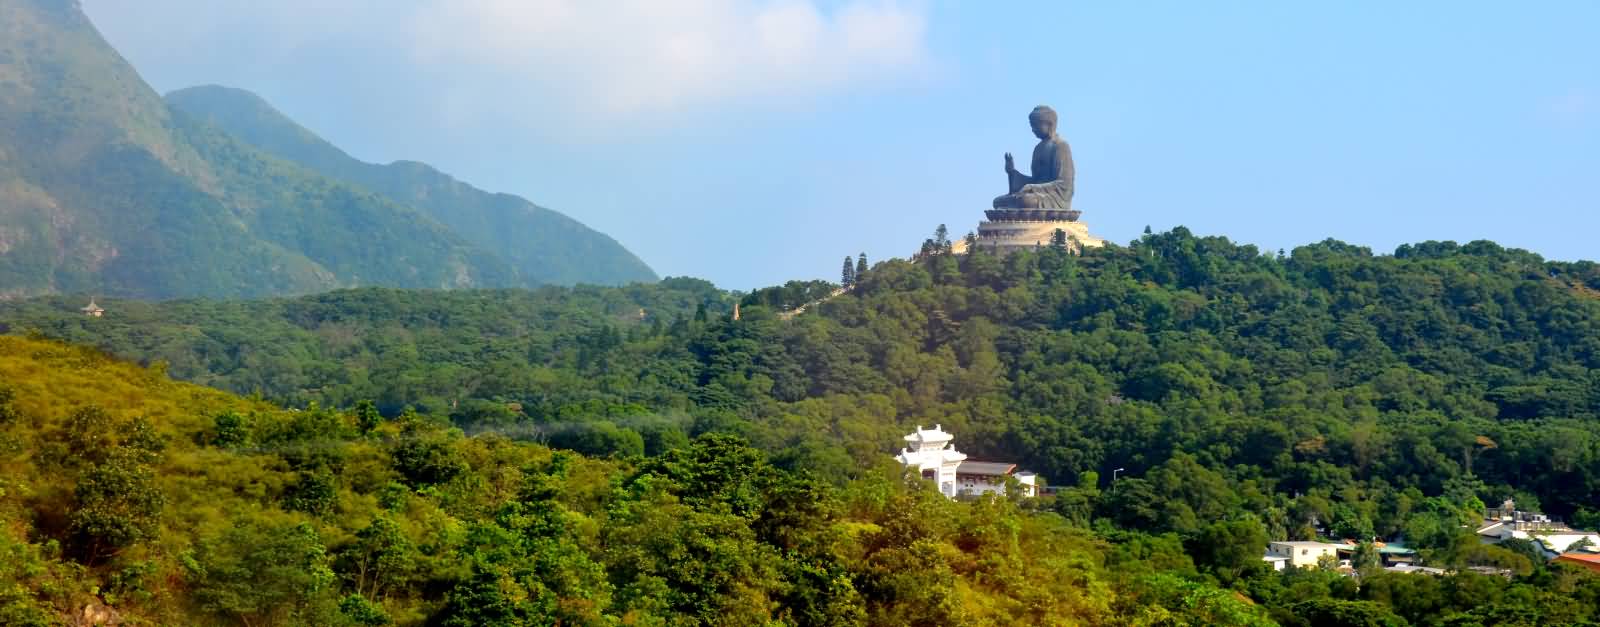 Far View Of Tian Tan Buddha In Hong Kong